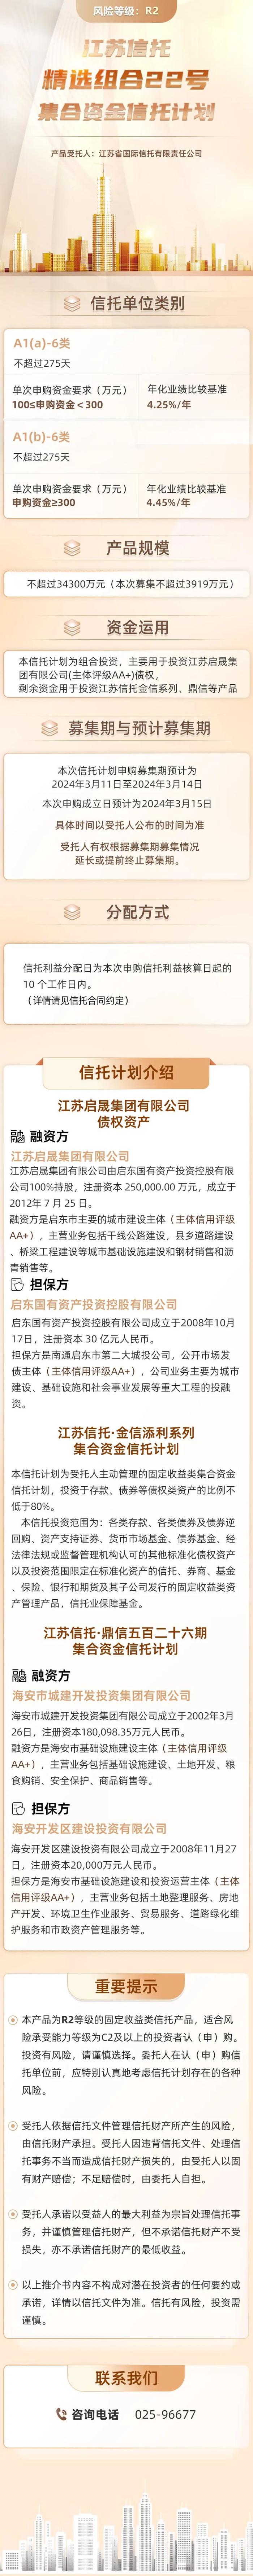 【正在热销】丨江苏信托-精选组合22号集合资金信托计划